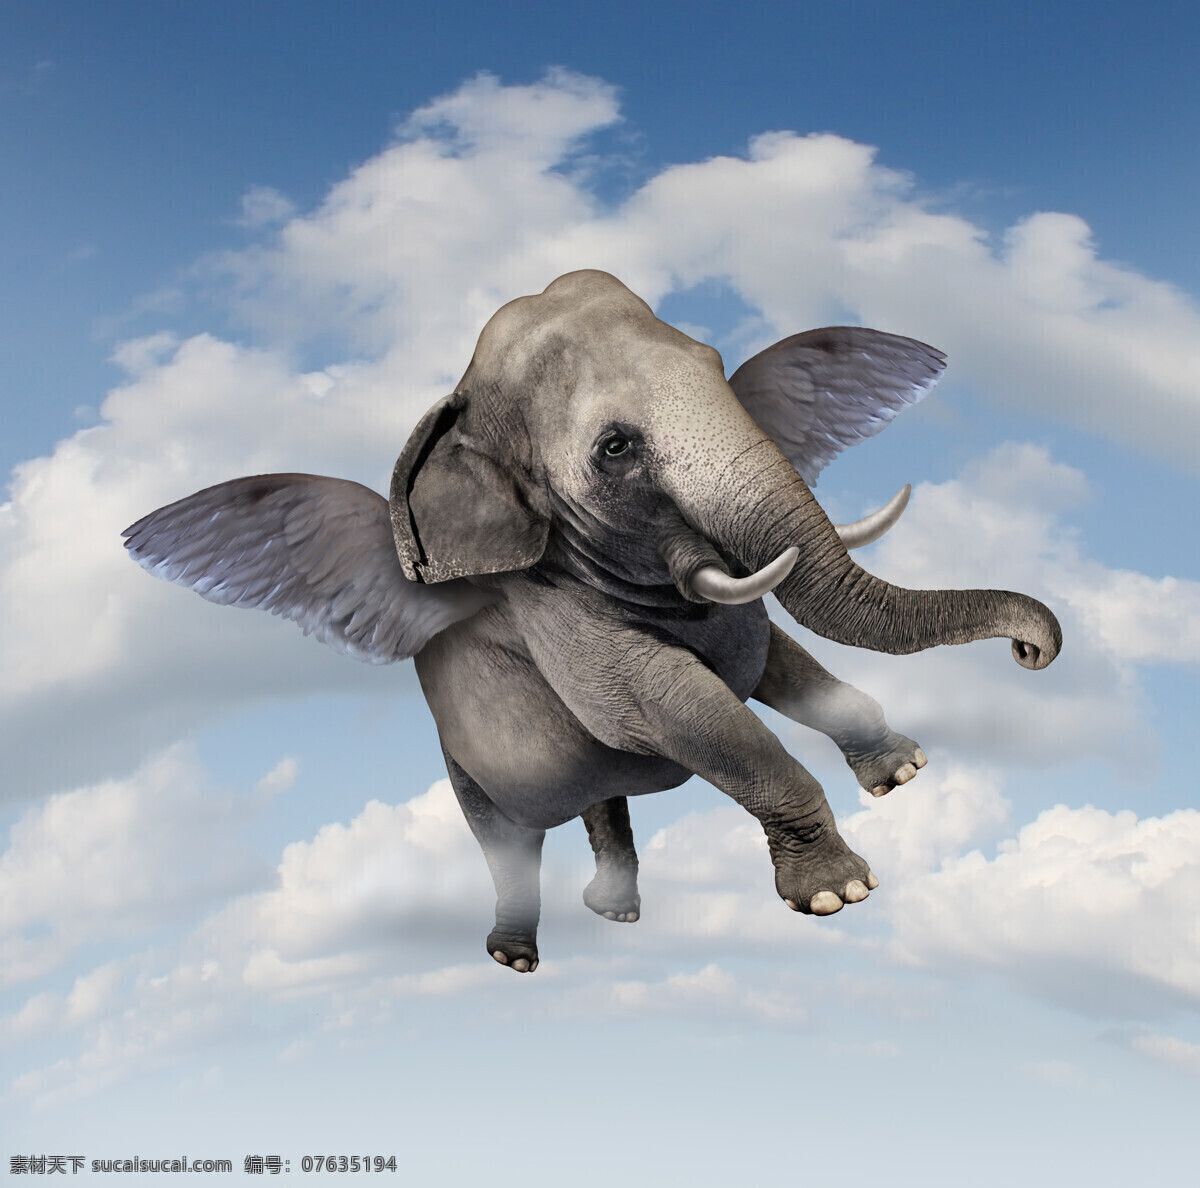 会 飞 大象 会飞的大象 飞行的大象 翅膀 蓝天白云 创意图片 现代商务 商务金融